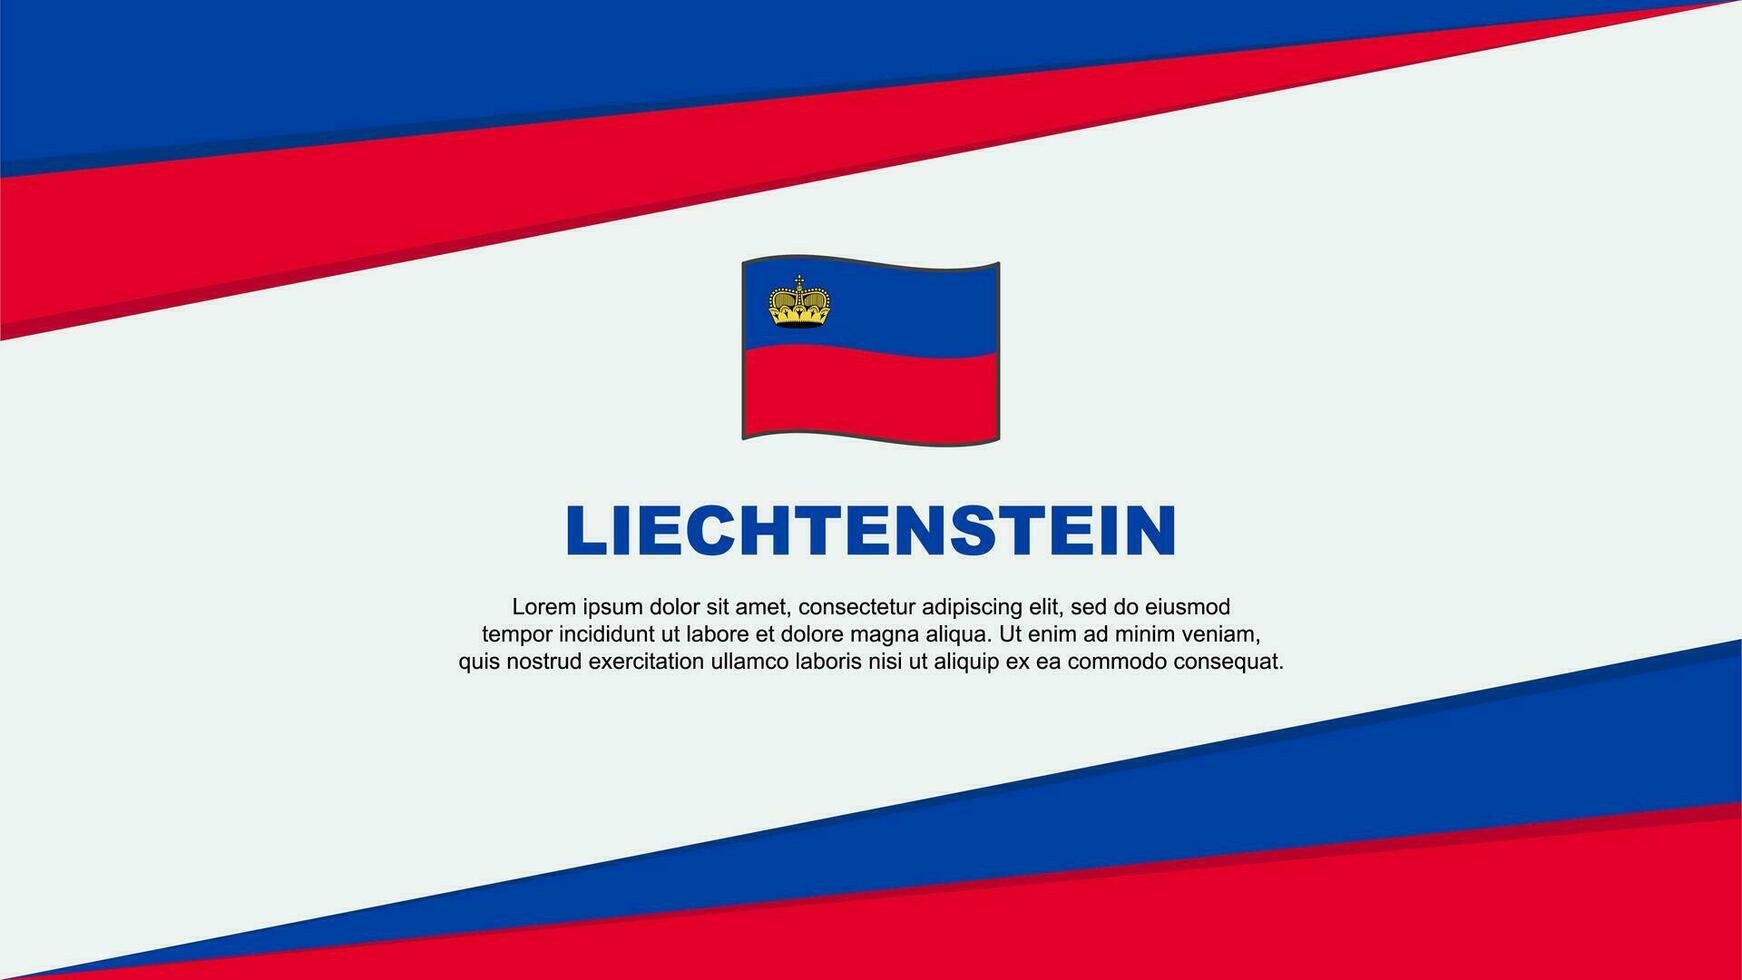 Liechtenstein Flag Abstract Background Design Template. Liechtenstein Independence Day Banner Cartoon Vector Illustration. Liechtenstein Design